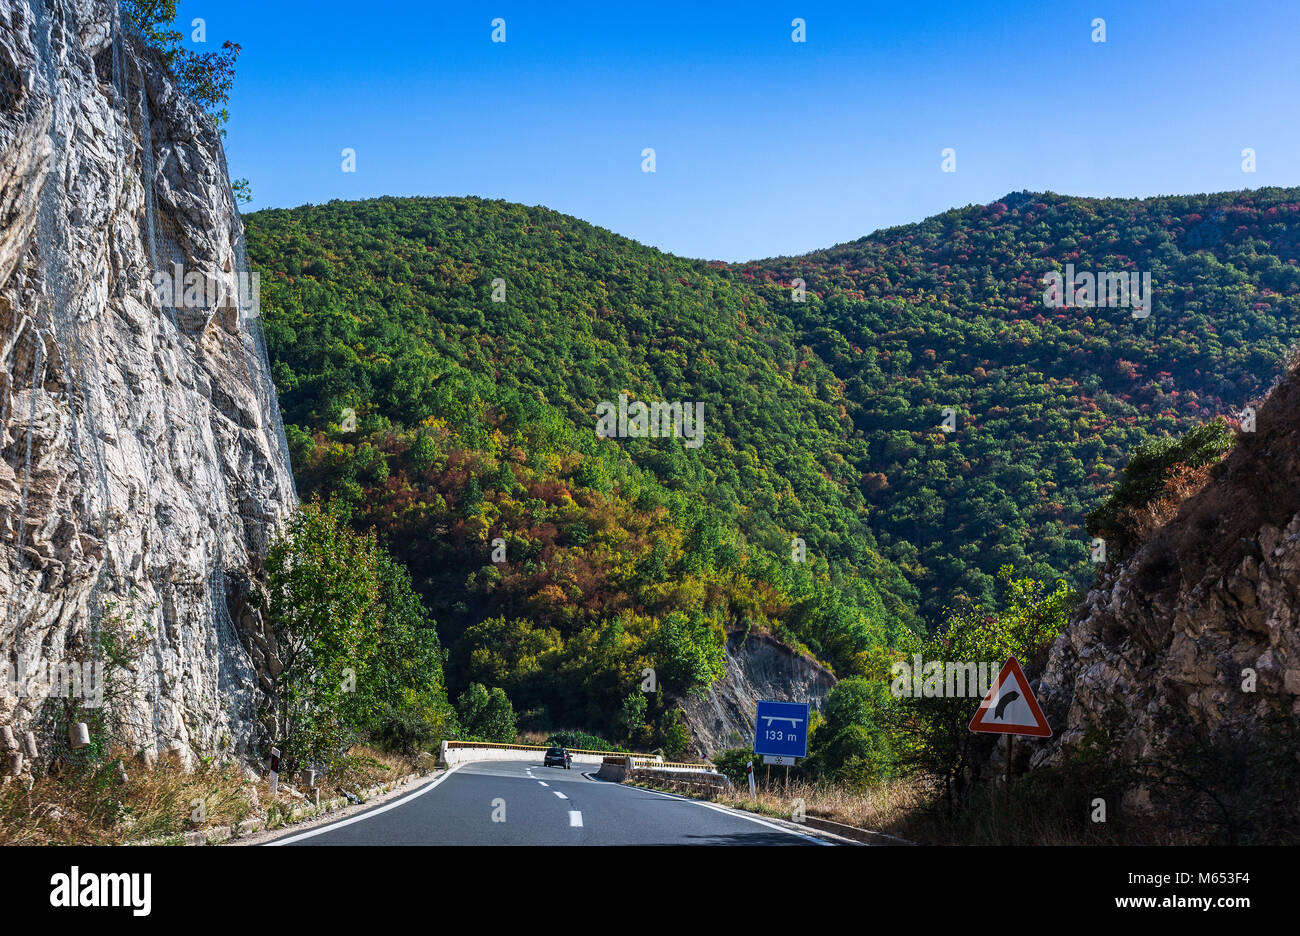 Route de montagne dans la Macédoine. Haut rocher protégé par net d'acier. Beau paysage avec des collines couvertes de forêts Banque D'Images